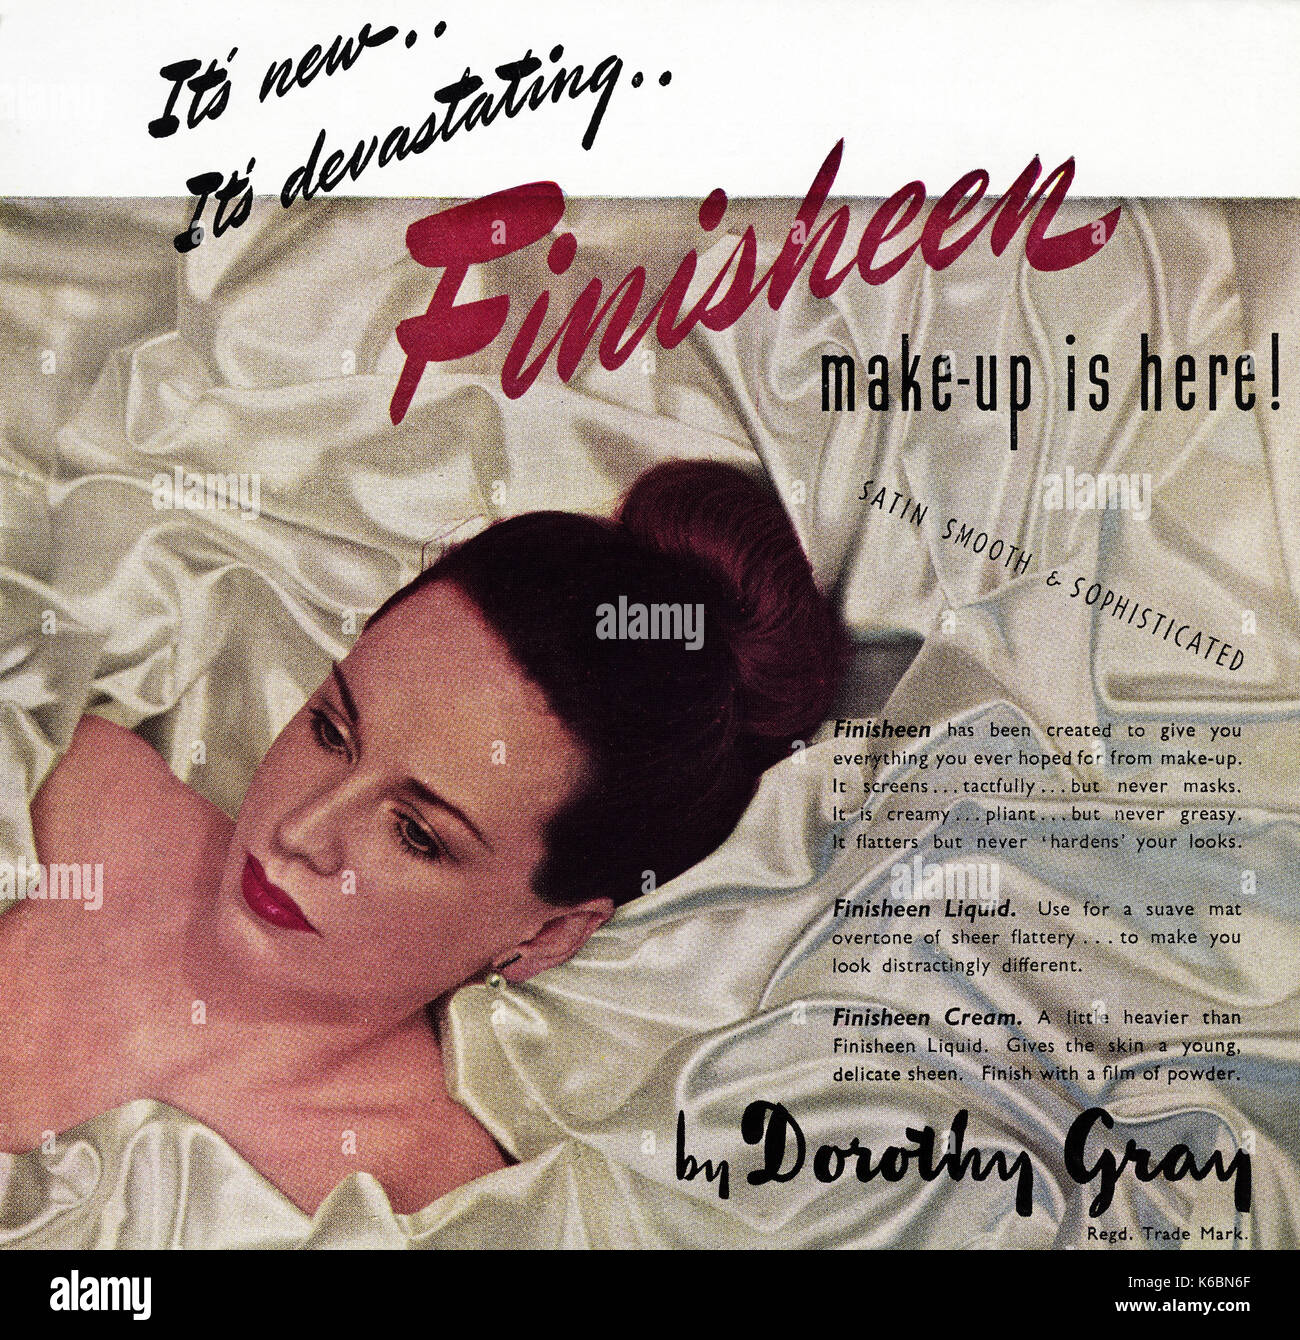 1940 old vintage publicité publicité originale dorothy gray maquillage en vers 1947, lorsque le magazine fournitures étaient toujours restreinte en vertu de rationnement de l'après-guerre Banque D'Images